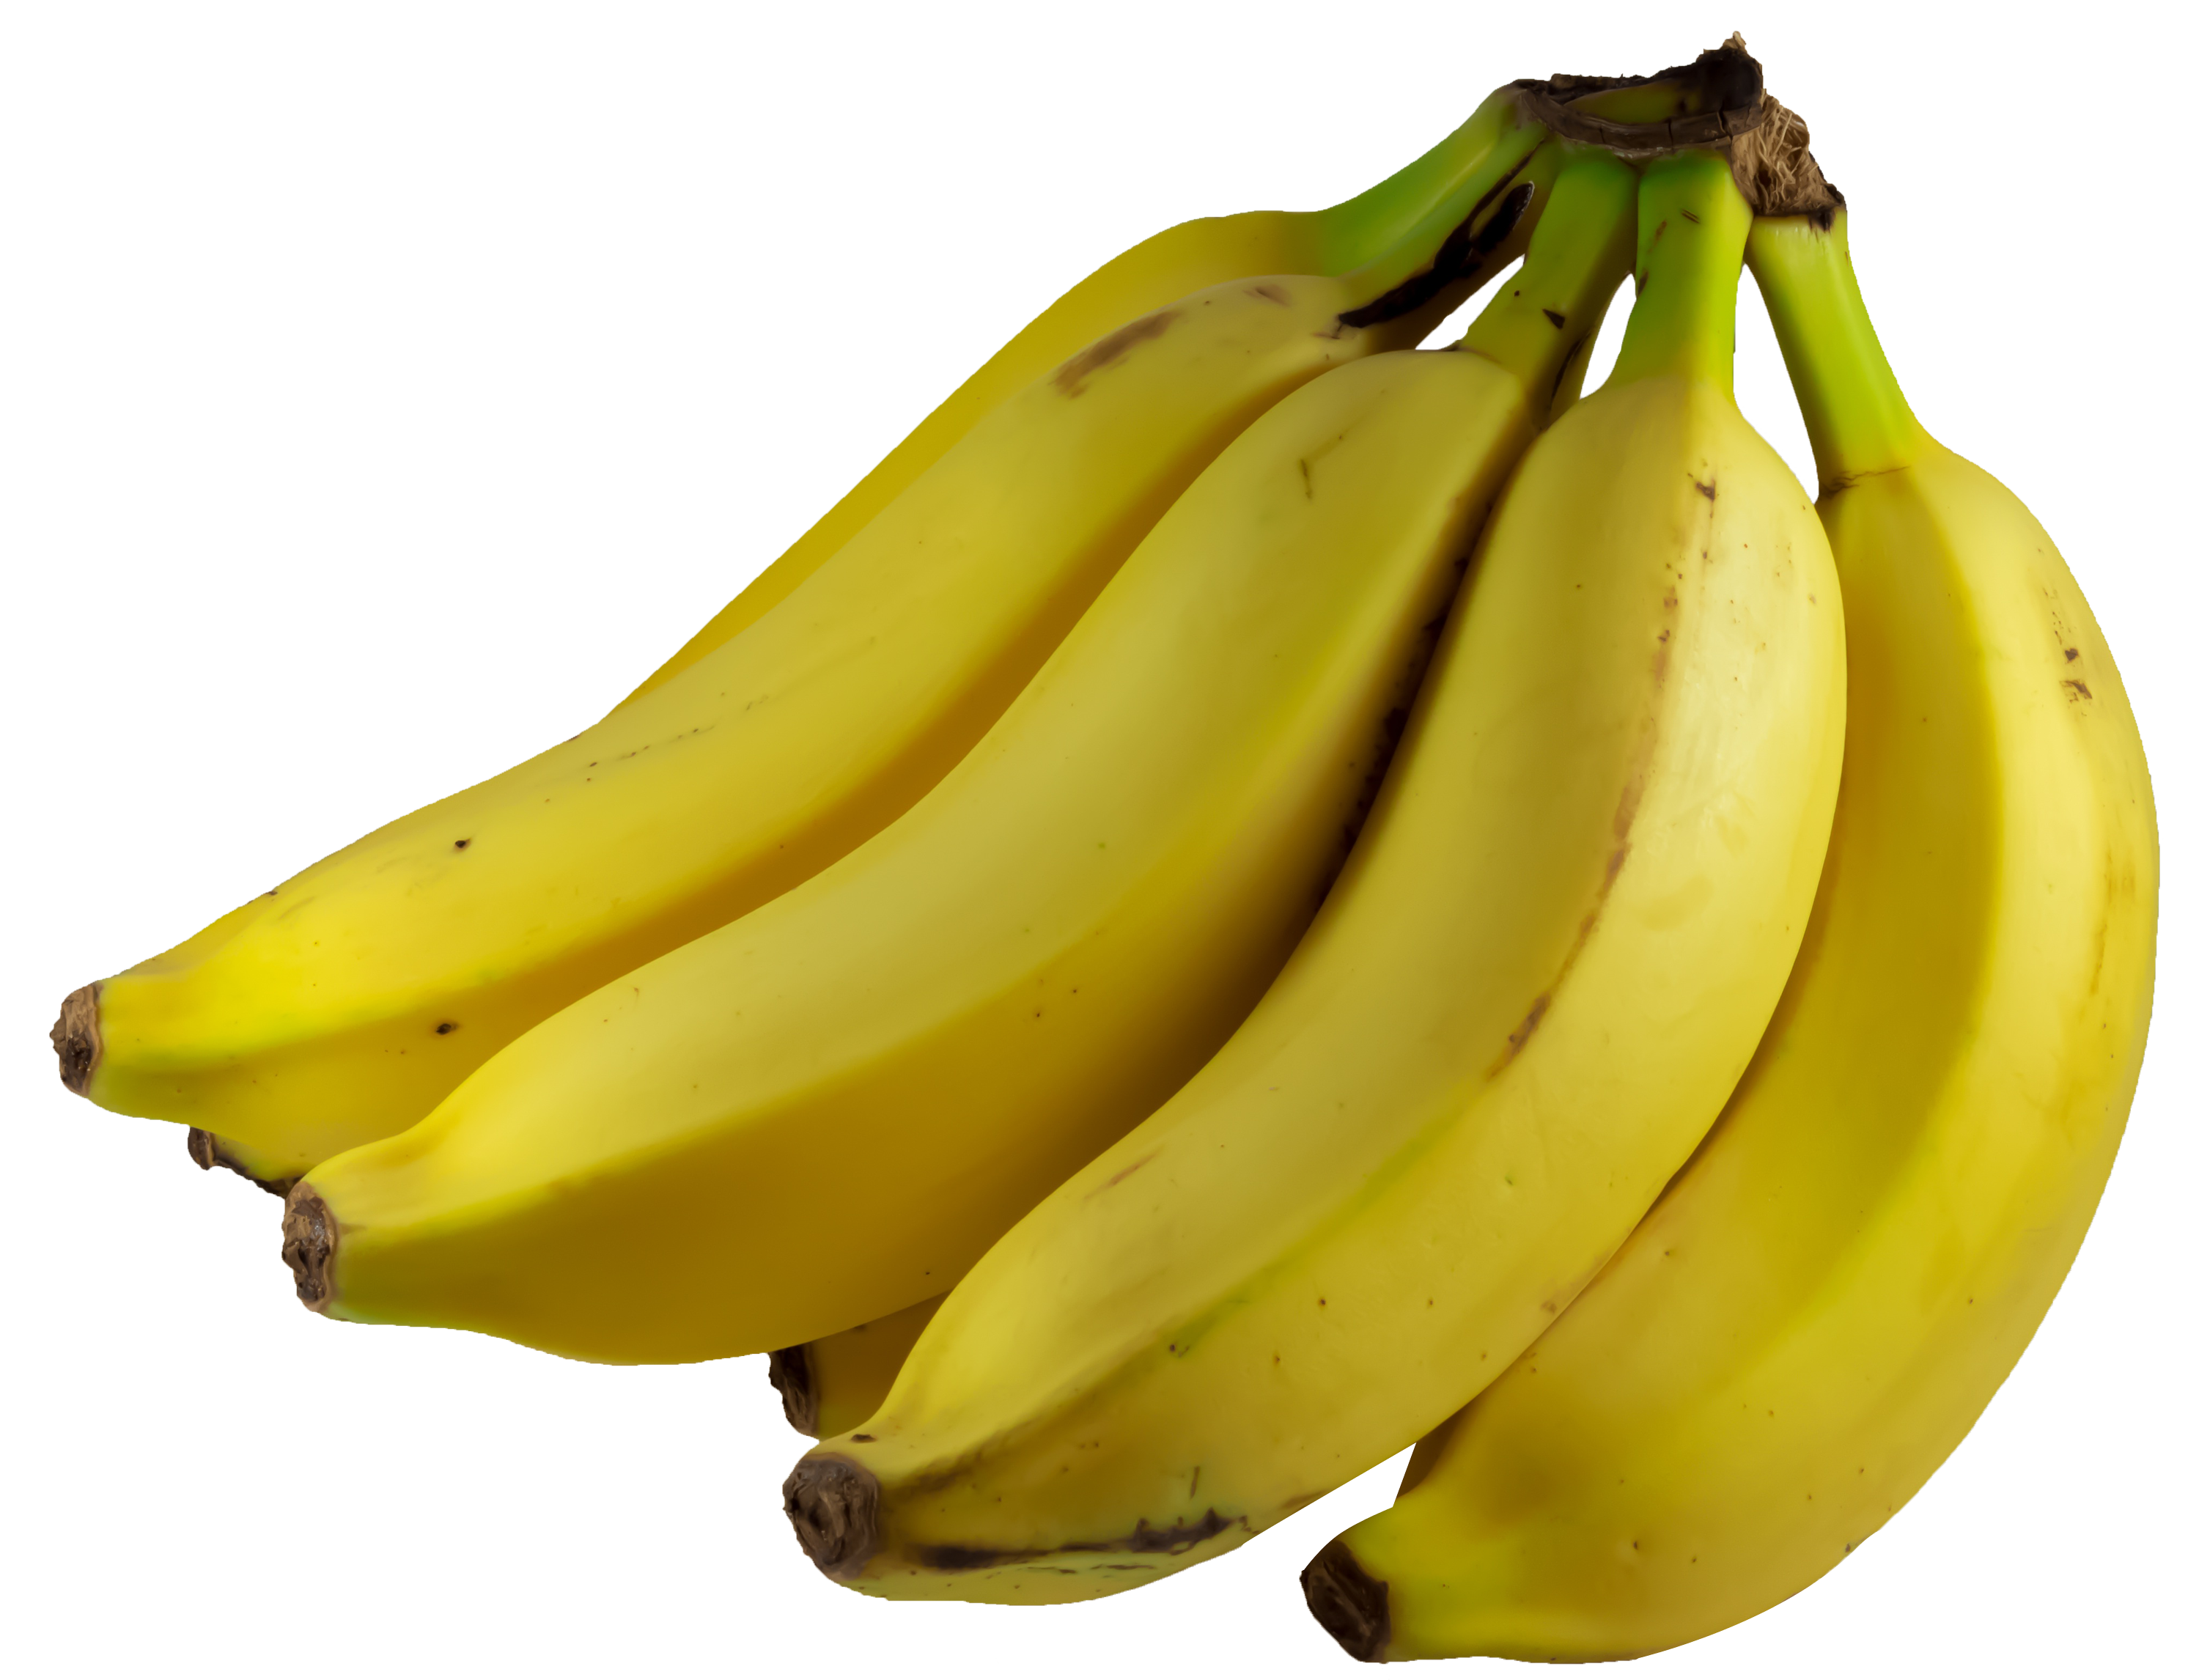 clipart banana bunch banana